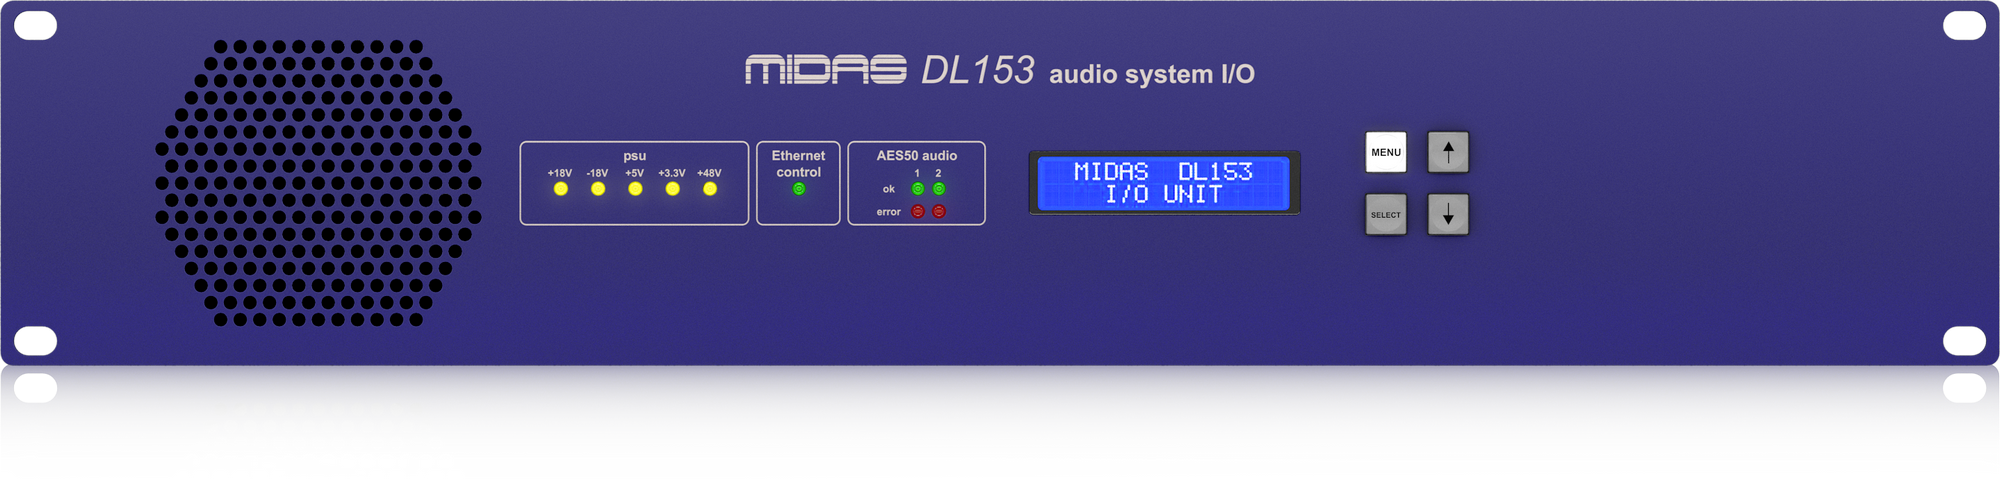 M32R Live DL153 Bundle